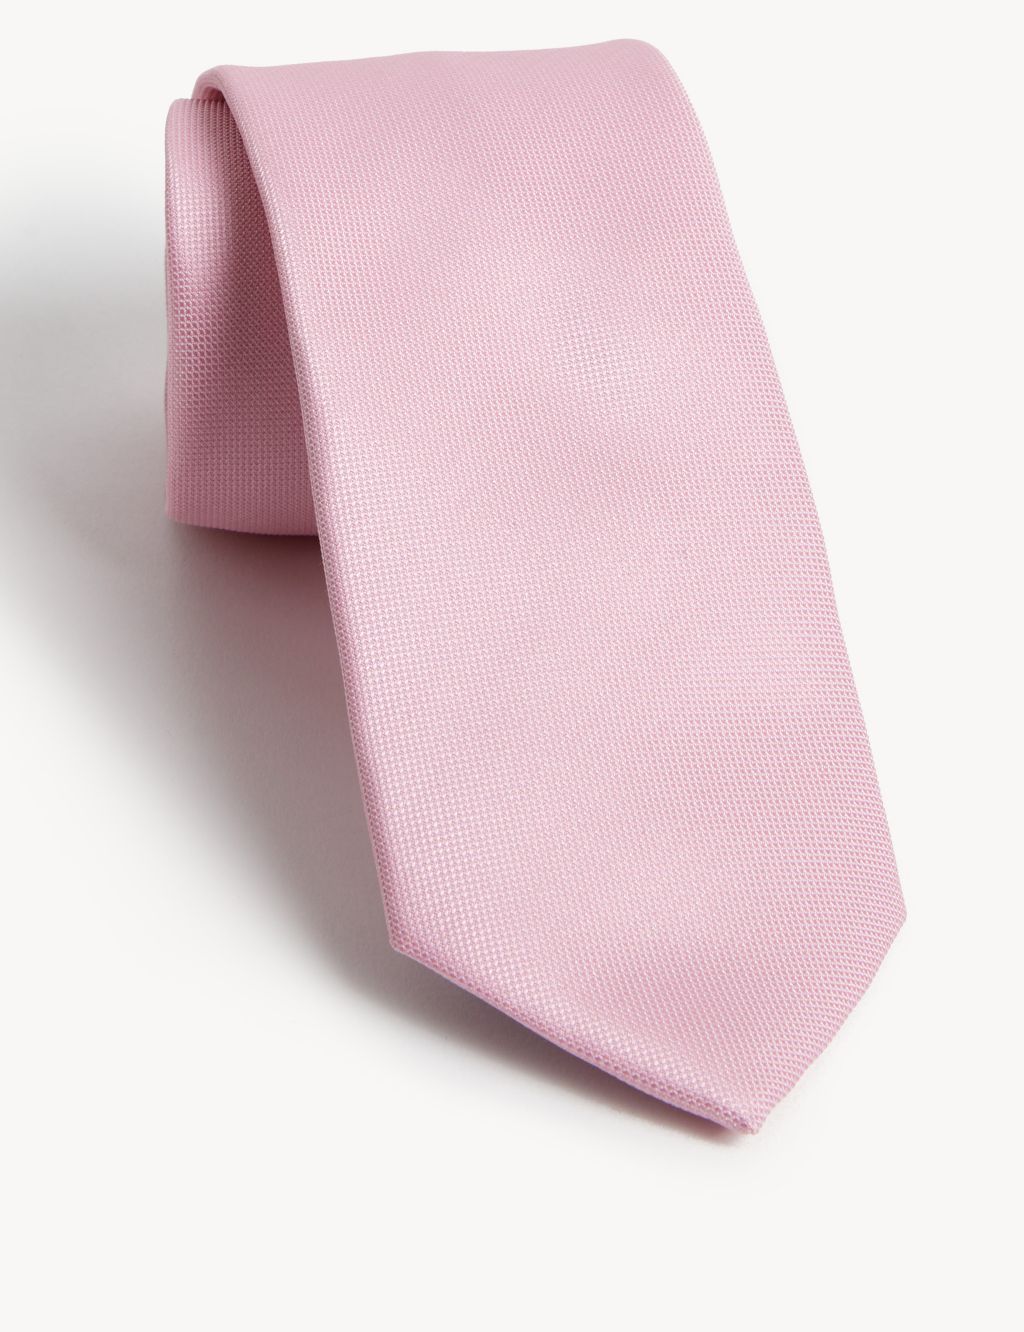 Floral Tie, Handkerchief & Pin Set image 2